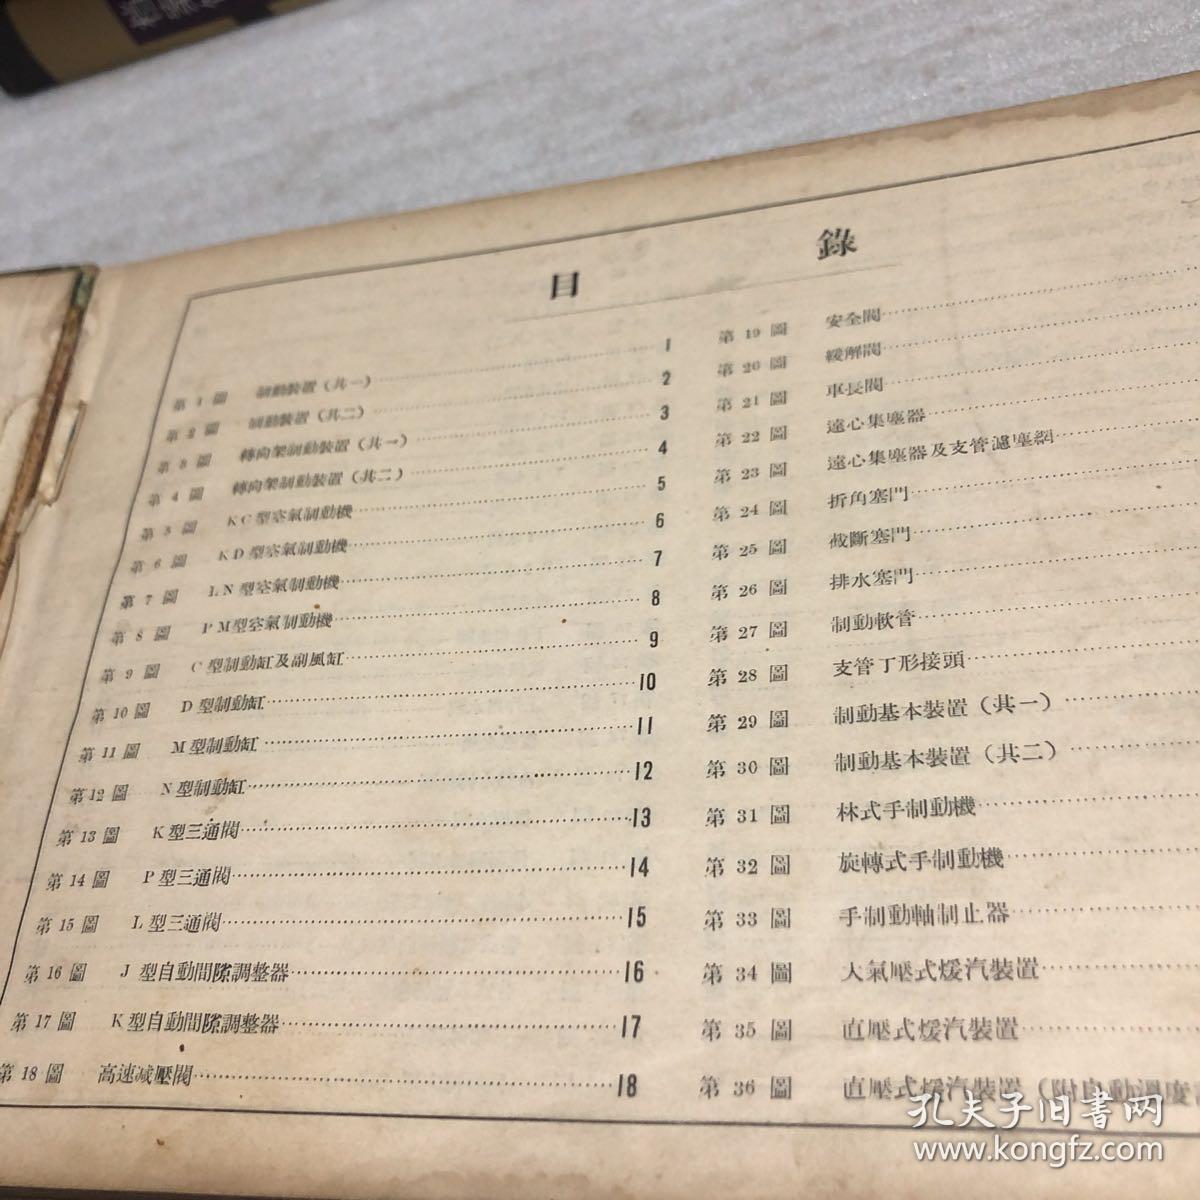 客货车名称鉴 (老铁路资料 152图)1950年